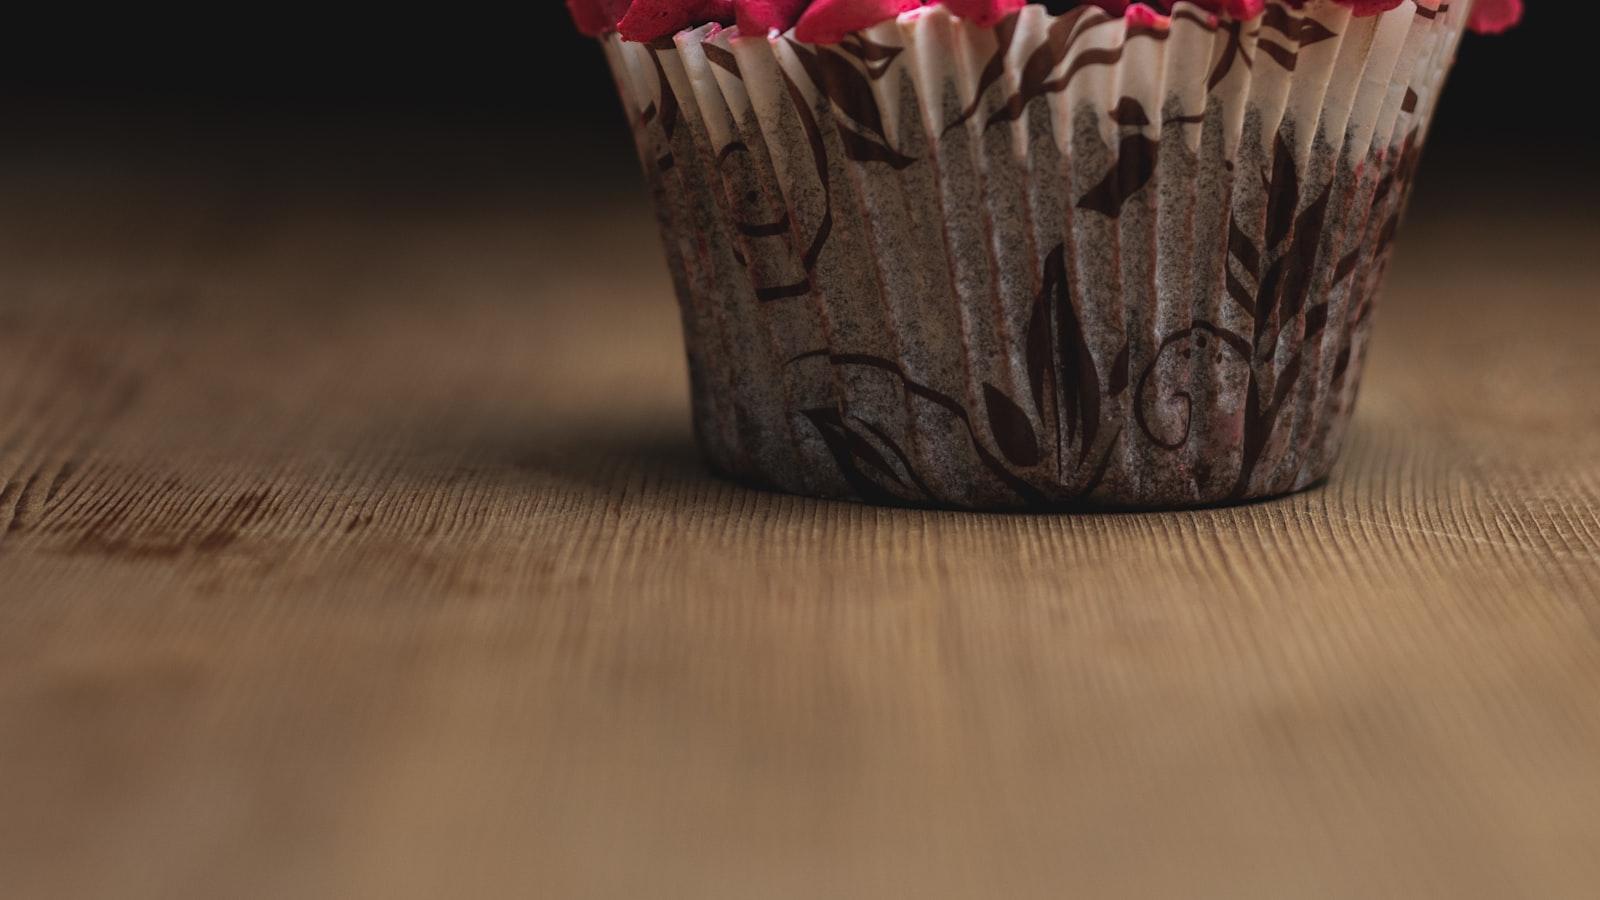 Descubra o Paraíso dos Cupcakes: Receitas e Inspirações Deliciosas!